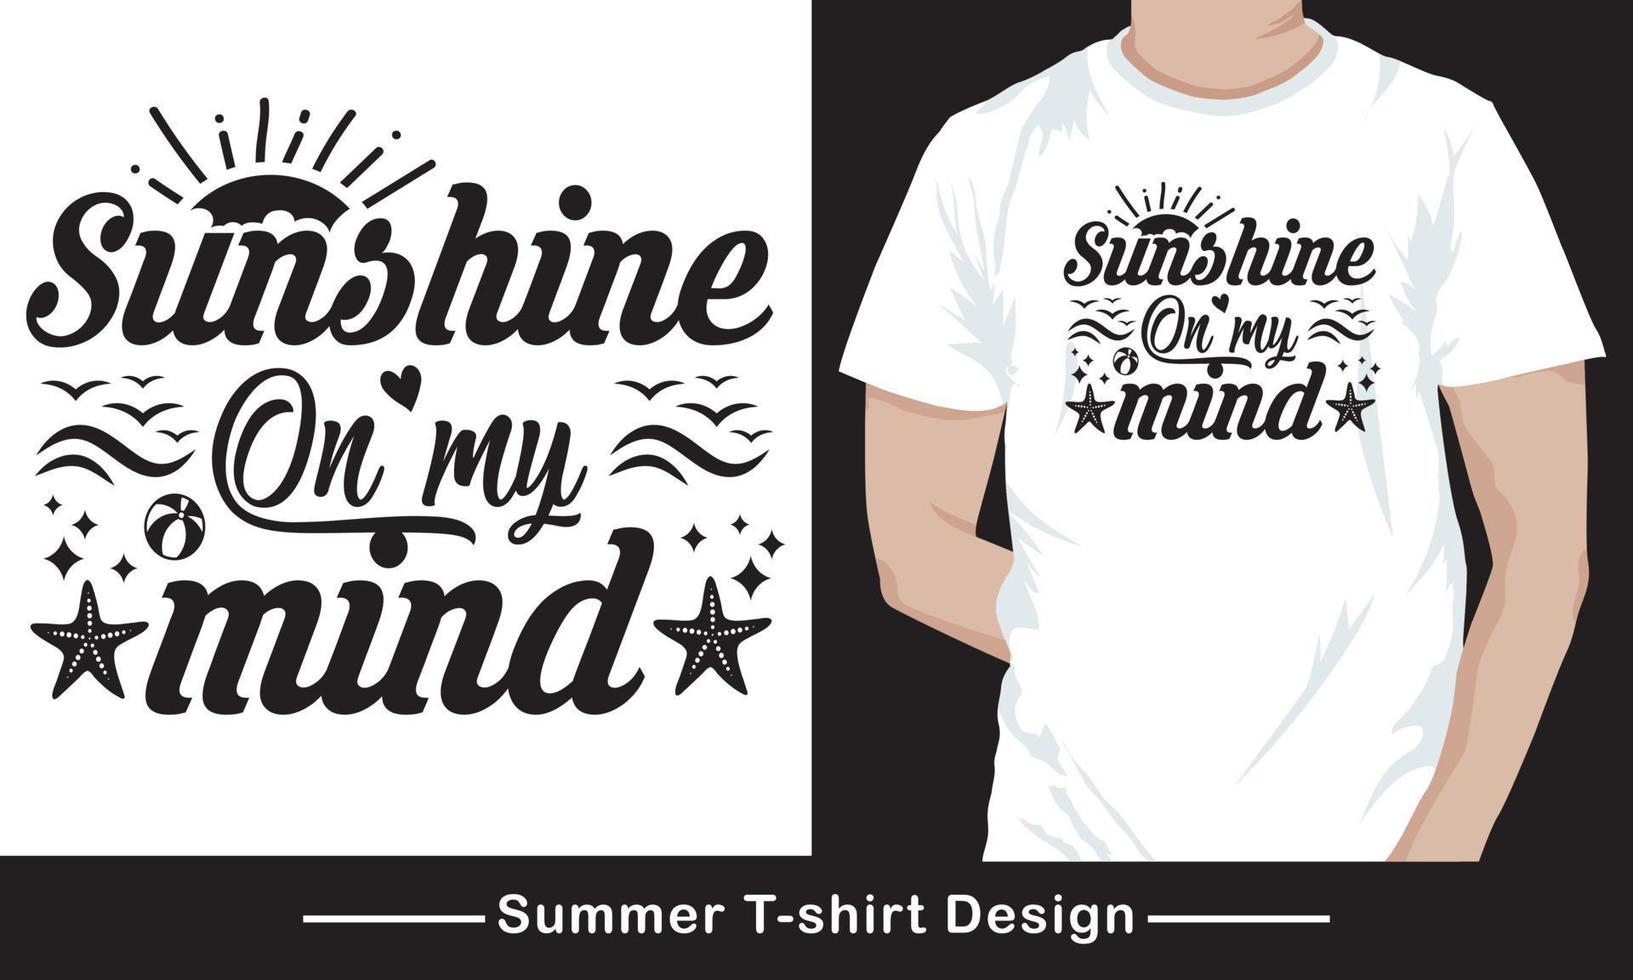 Sommerfest-T-Shirt-Design vektor